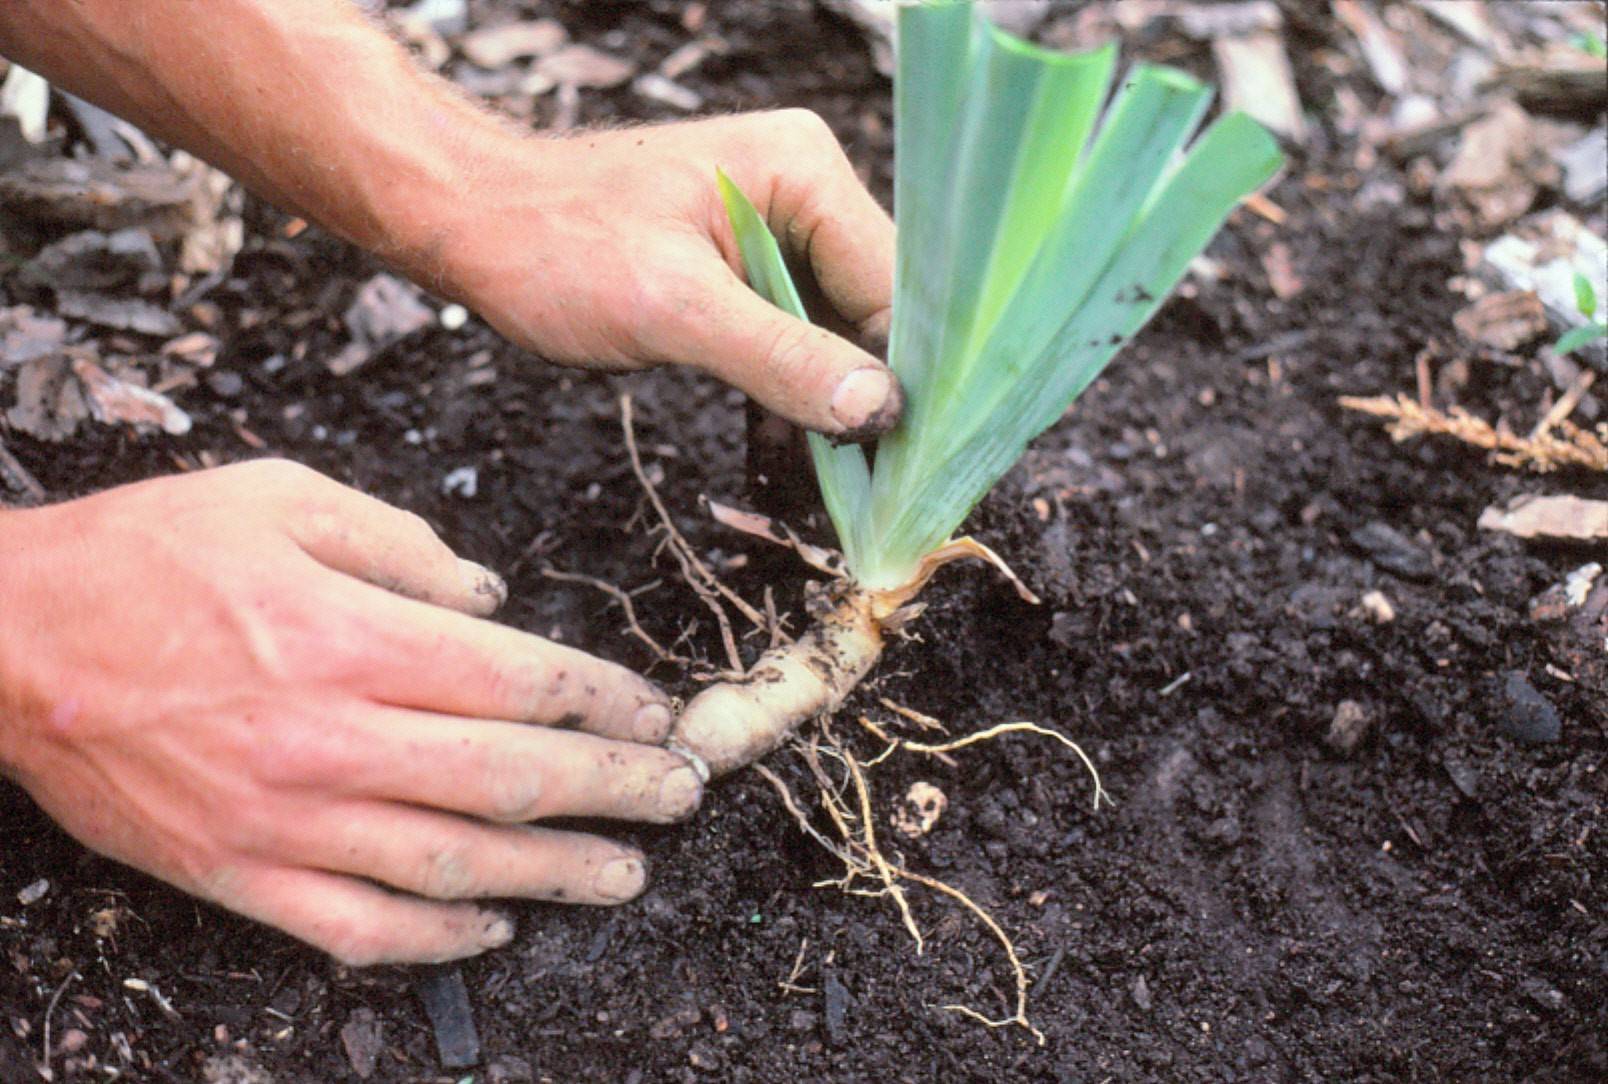 Как вырастить любисток из семян: сорта и посадка, правила ухода, сбор урожая